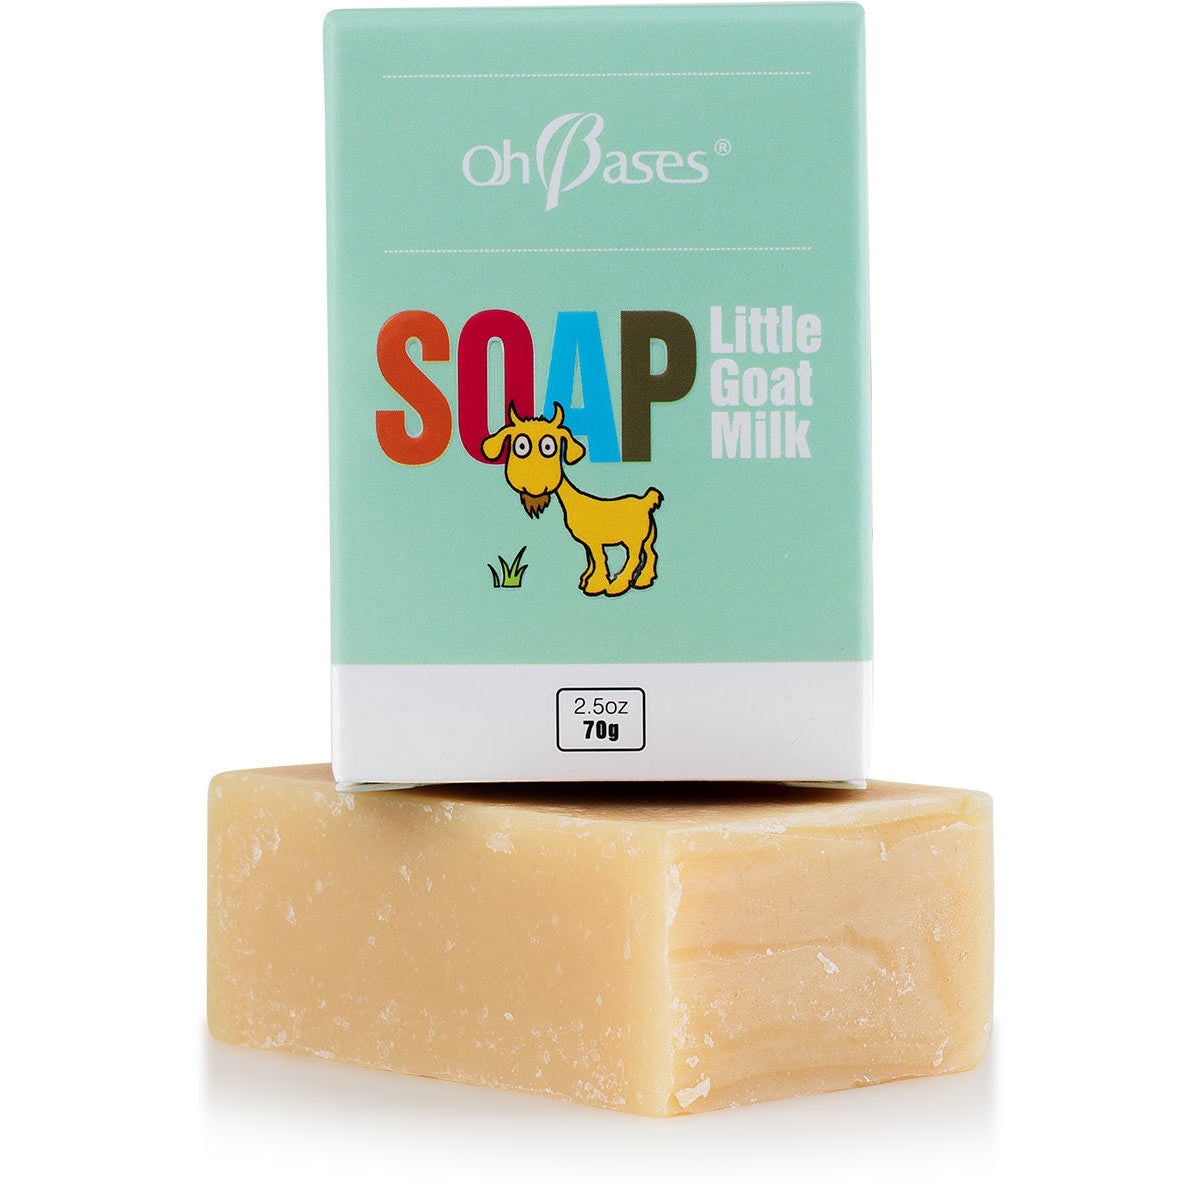 Little Goat Milk Soap - OhBases